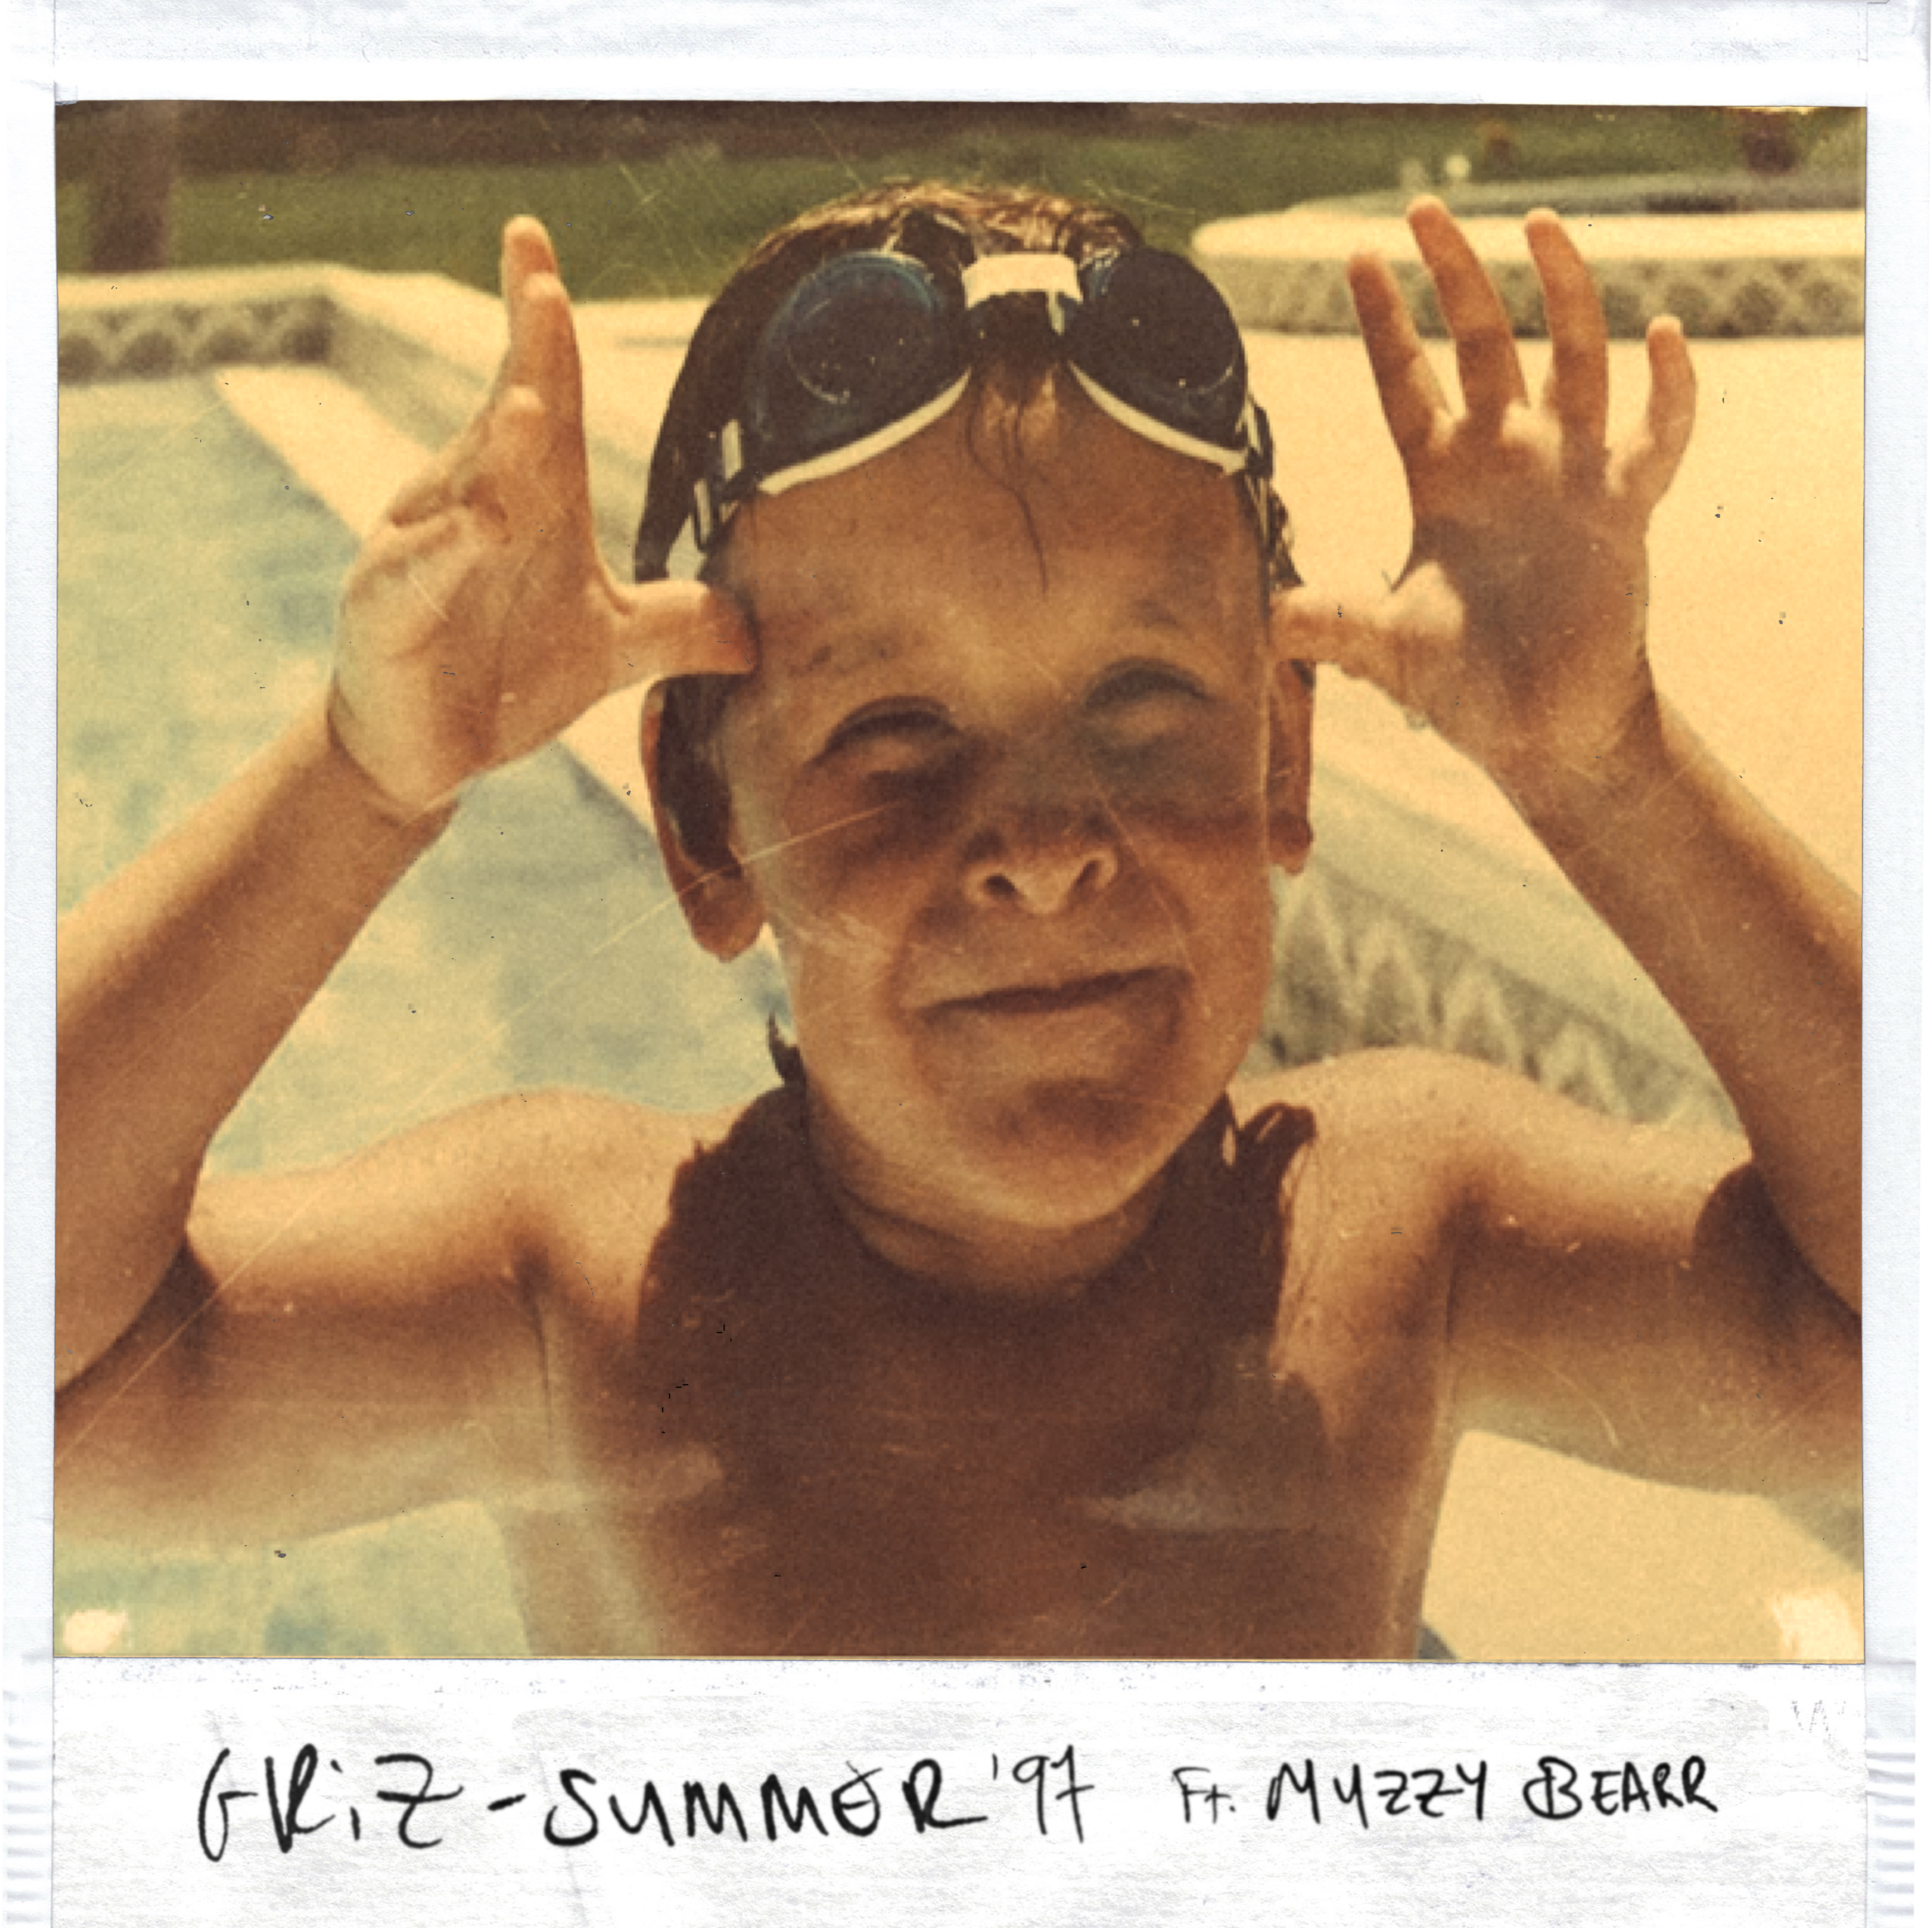 Unduh Summer '97 ft. Muzzy Bearr